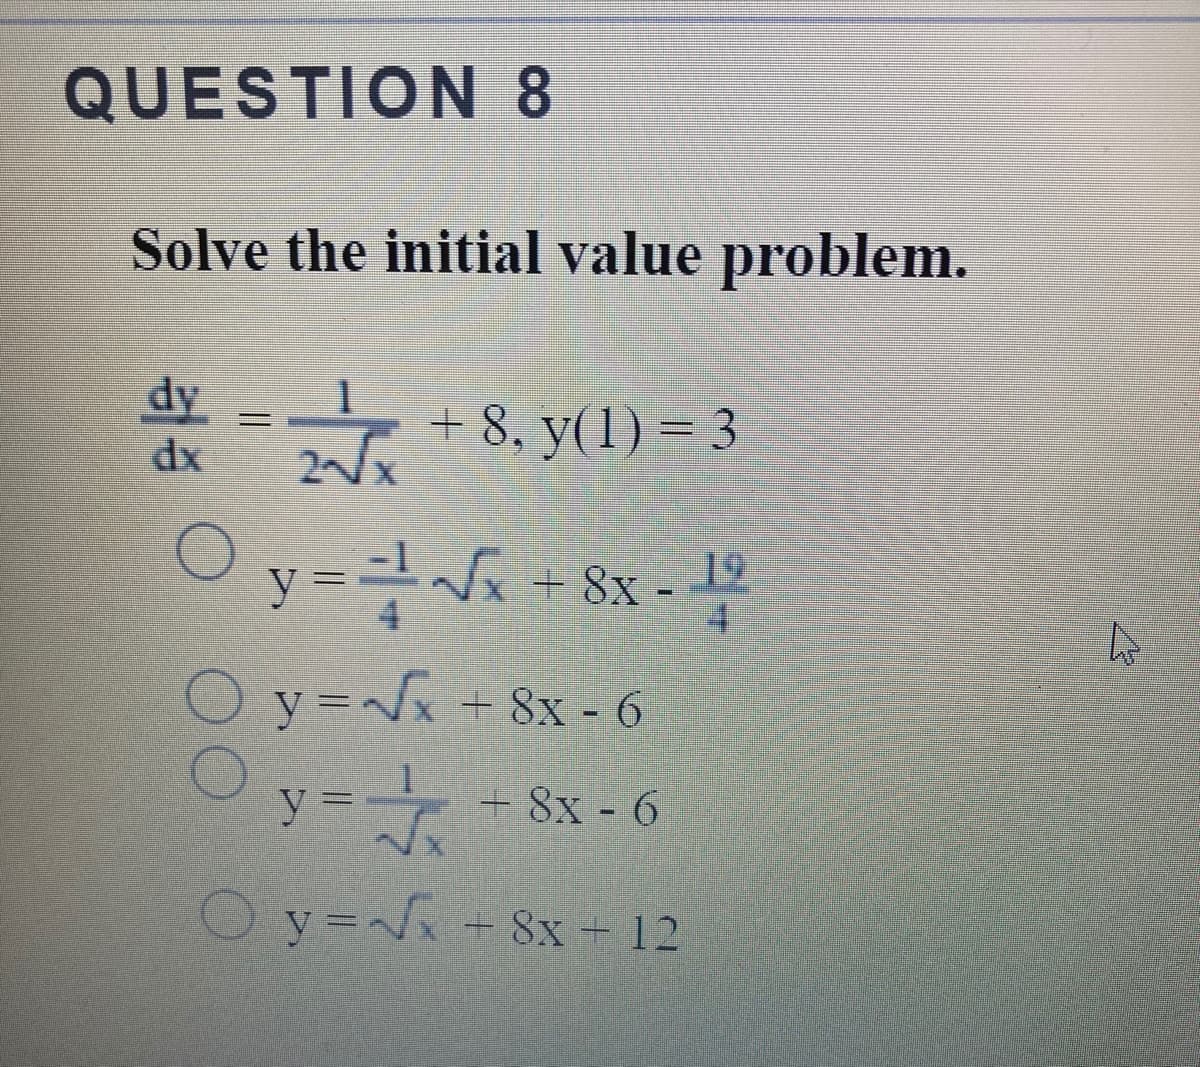 QUESTION 8
Solve the initial value problem.
dy
dx
+ 8, y(1) = 3
y =D
19
+ 8x -
4.
Oy==8x- 6
y= 8x - 6
O y= + 8x - 12
